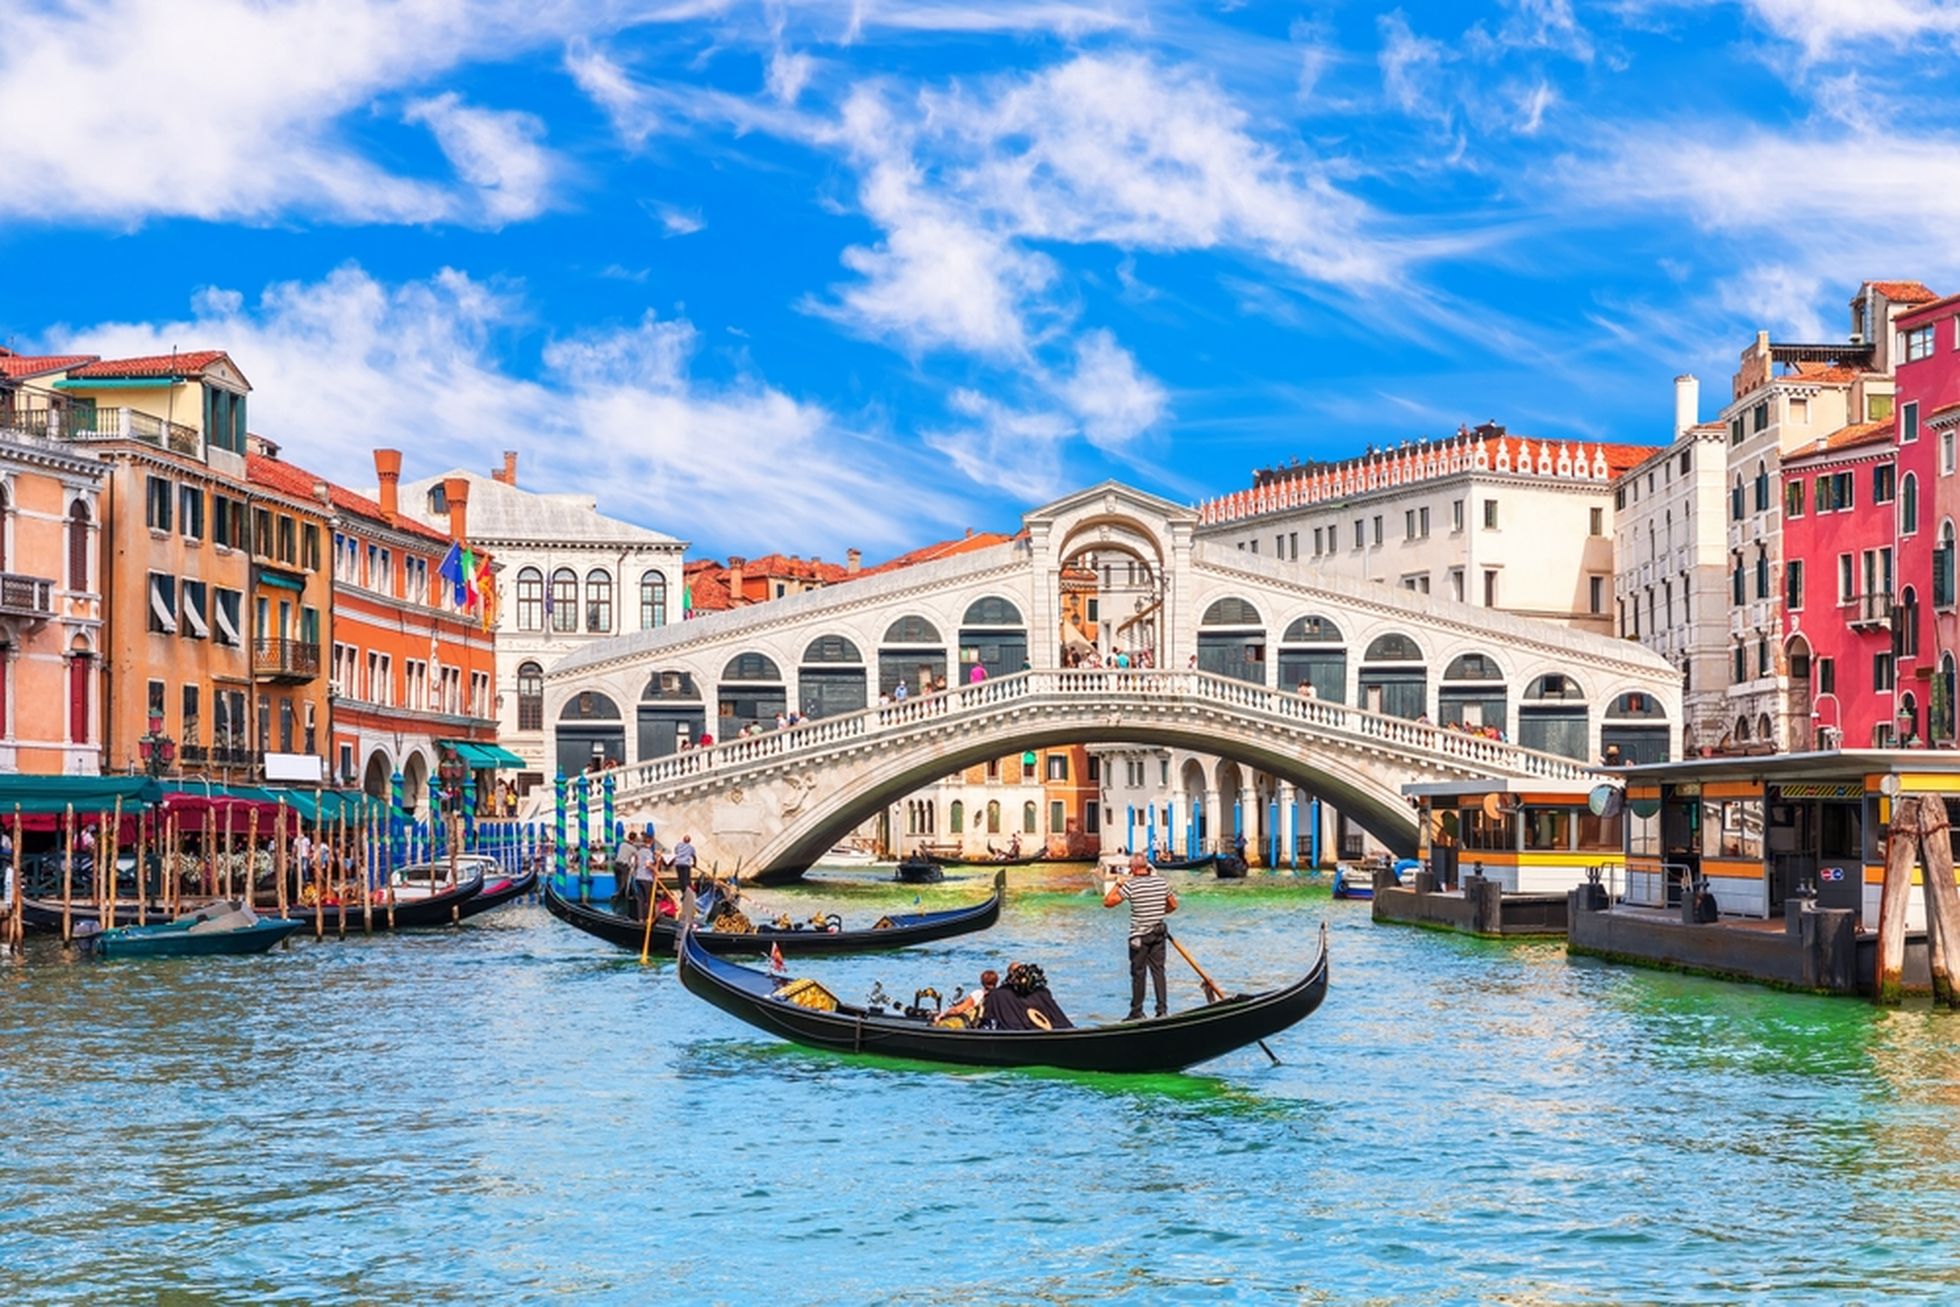 Ajaloolised hooned, maalilised gondlisõidud ja lugematu hulk sildasid on Veneetsia sümboliteks.